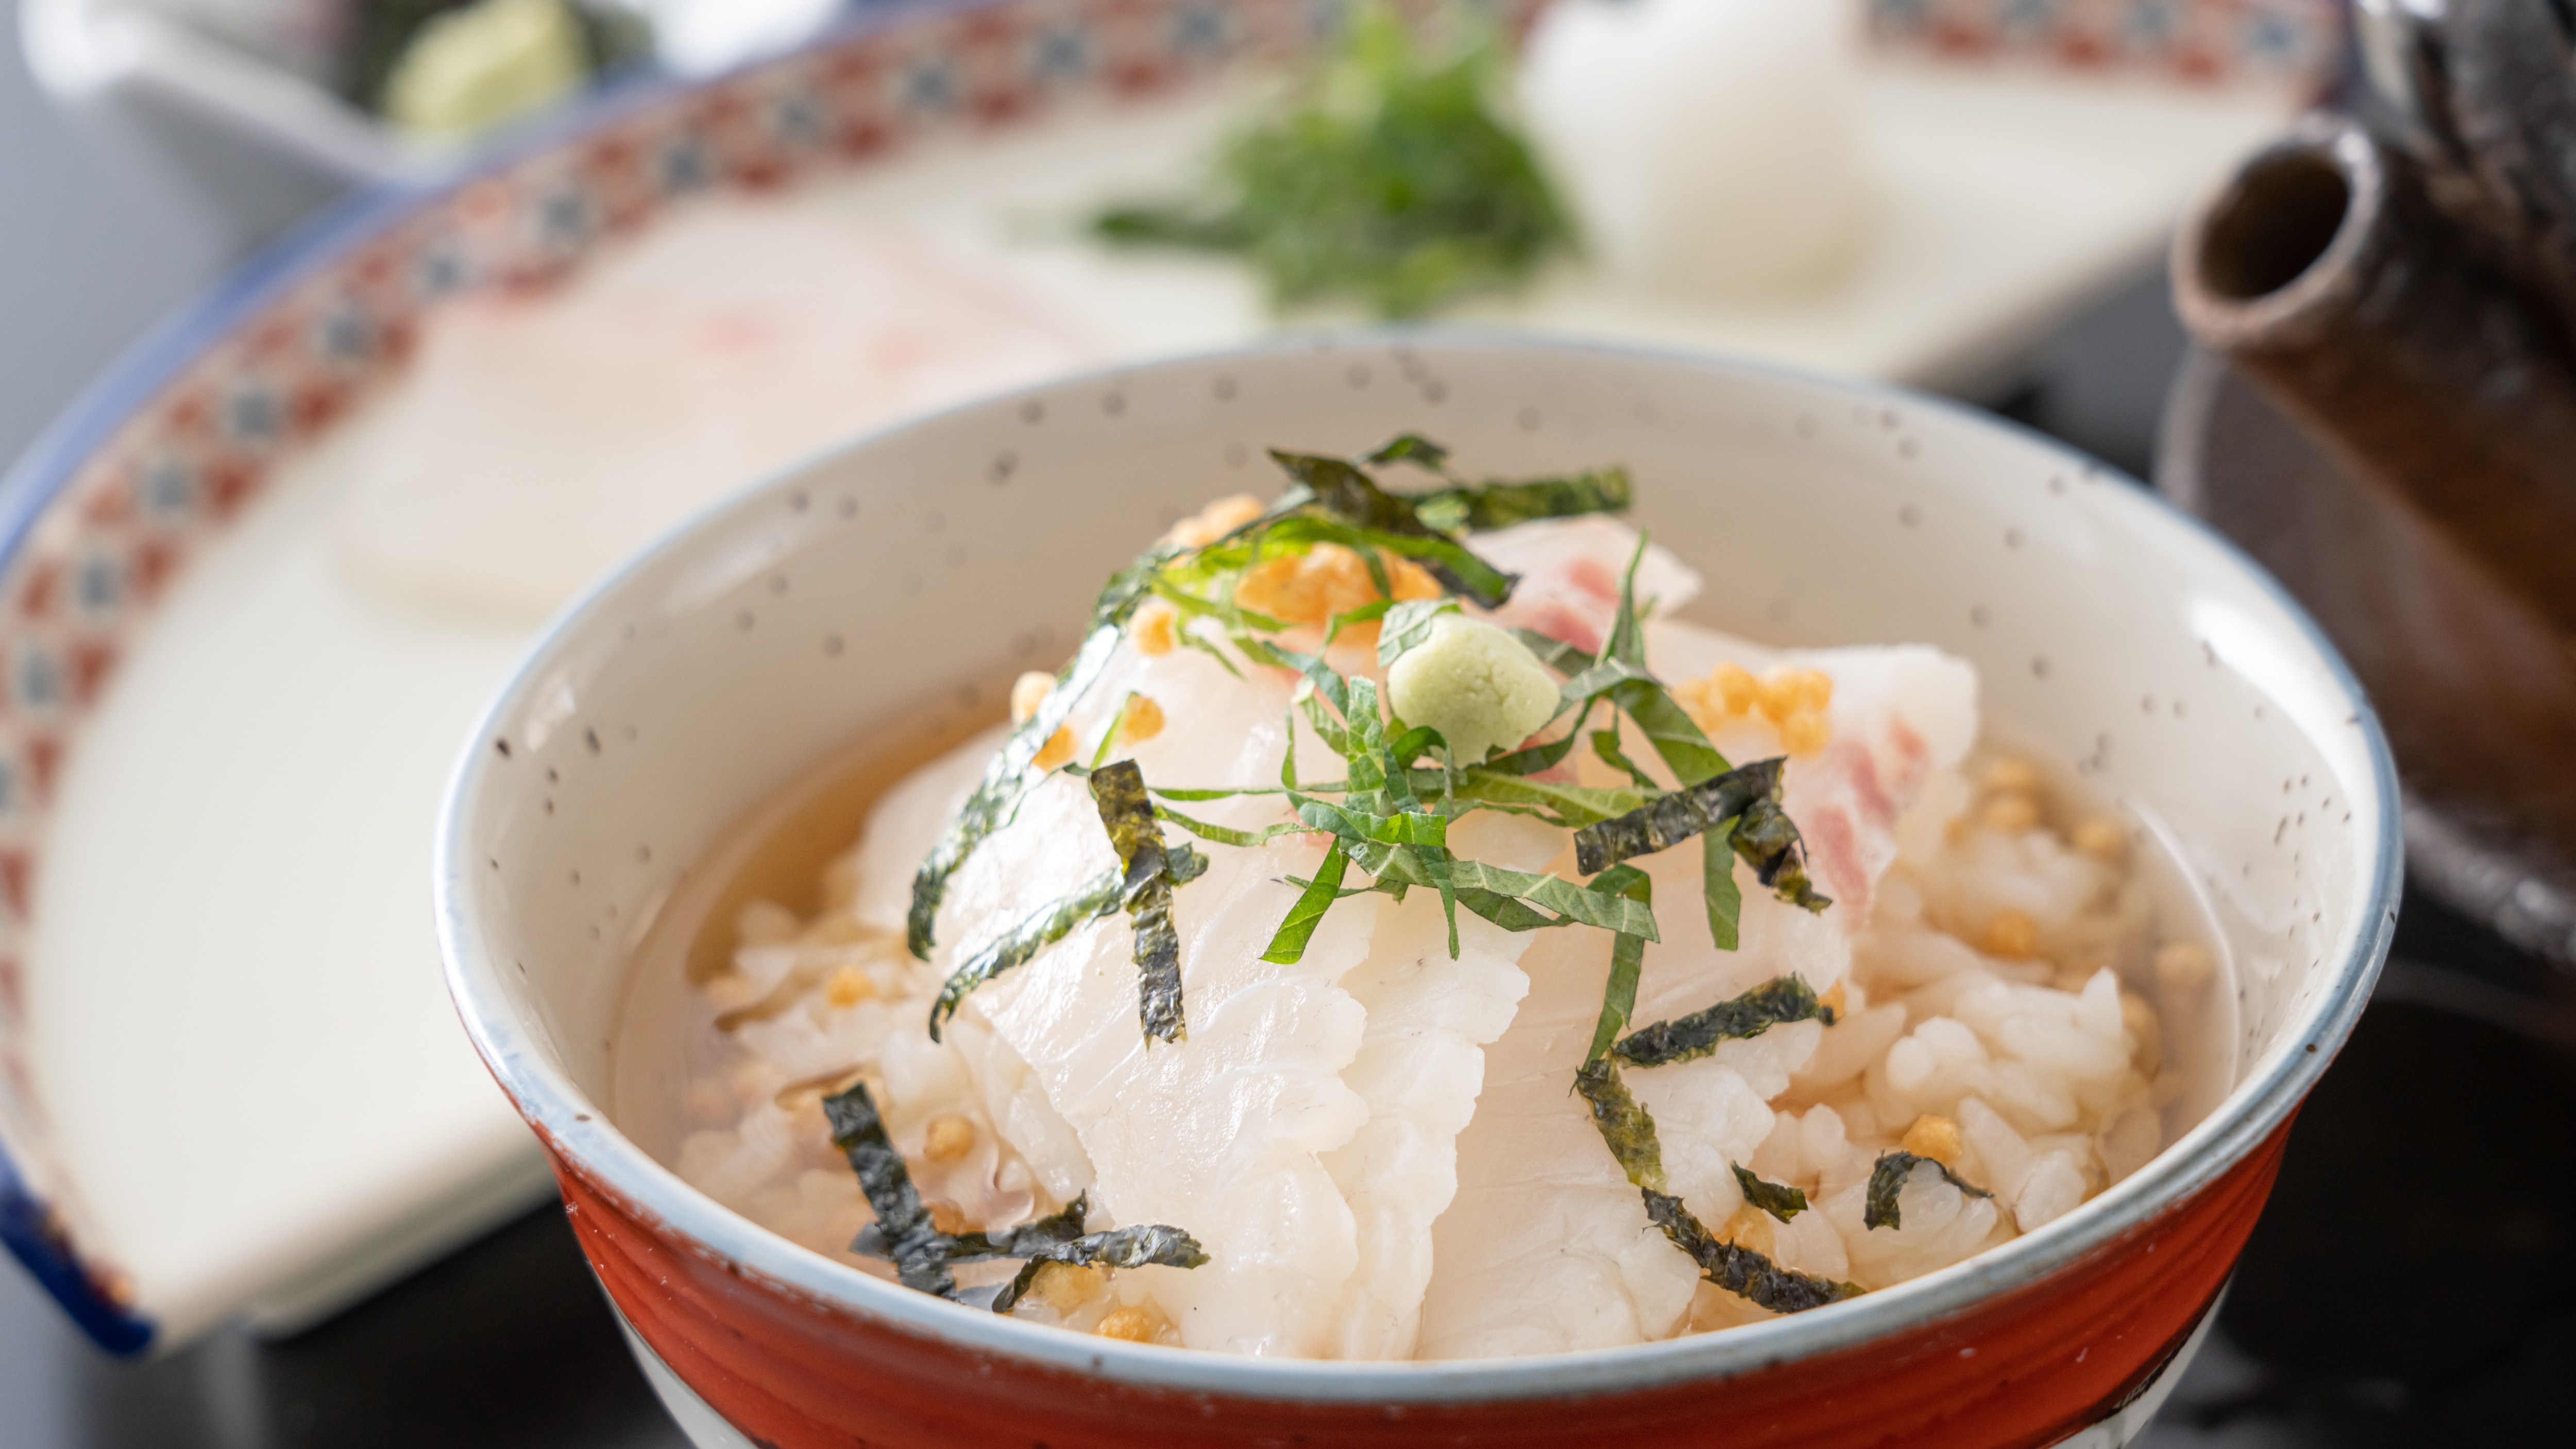 ■ [早餐示例] 鯛魚茶泡飯 * 圖片僅供參考。這取決於購買情況。